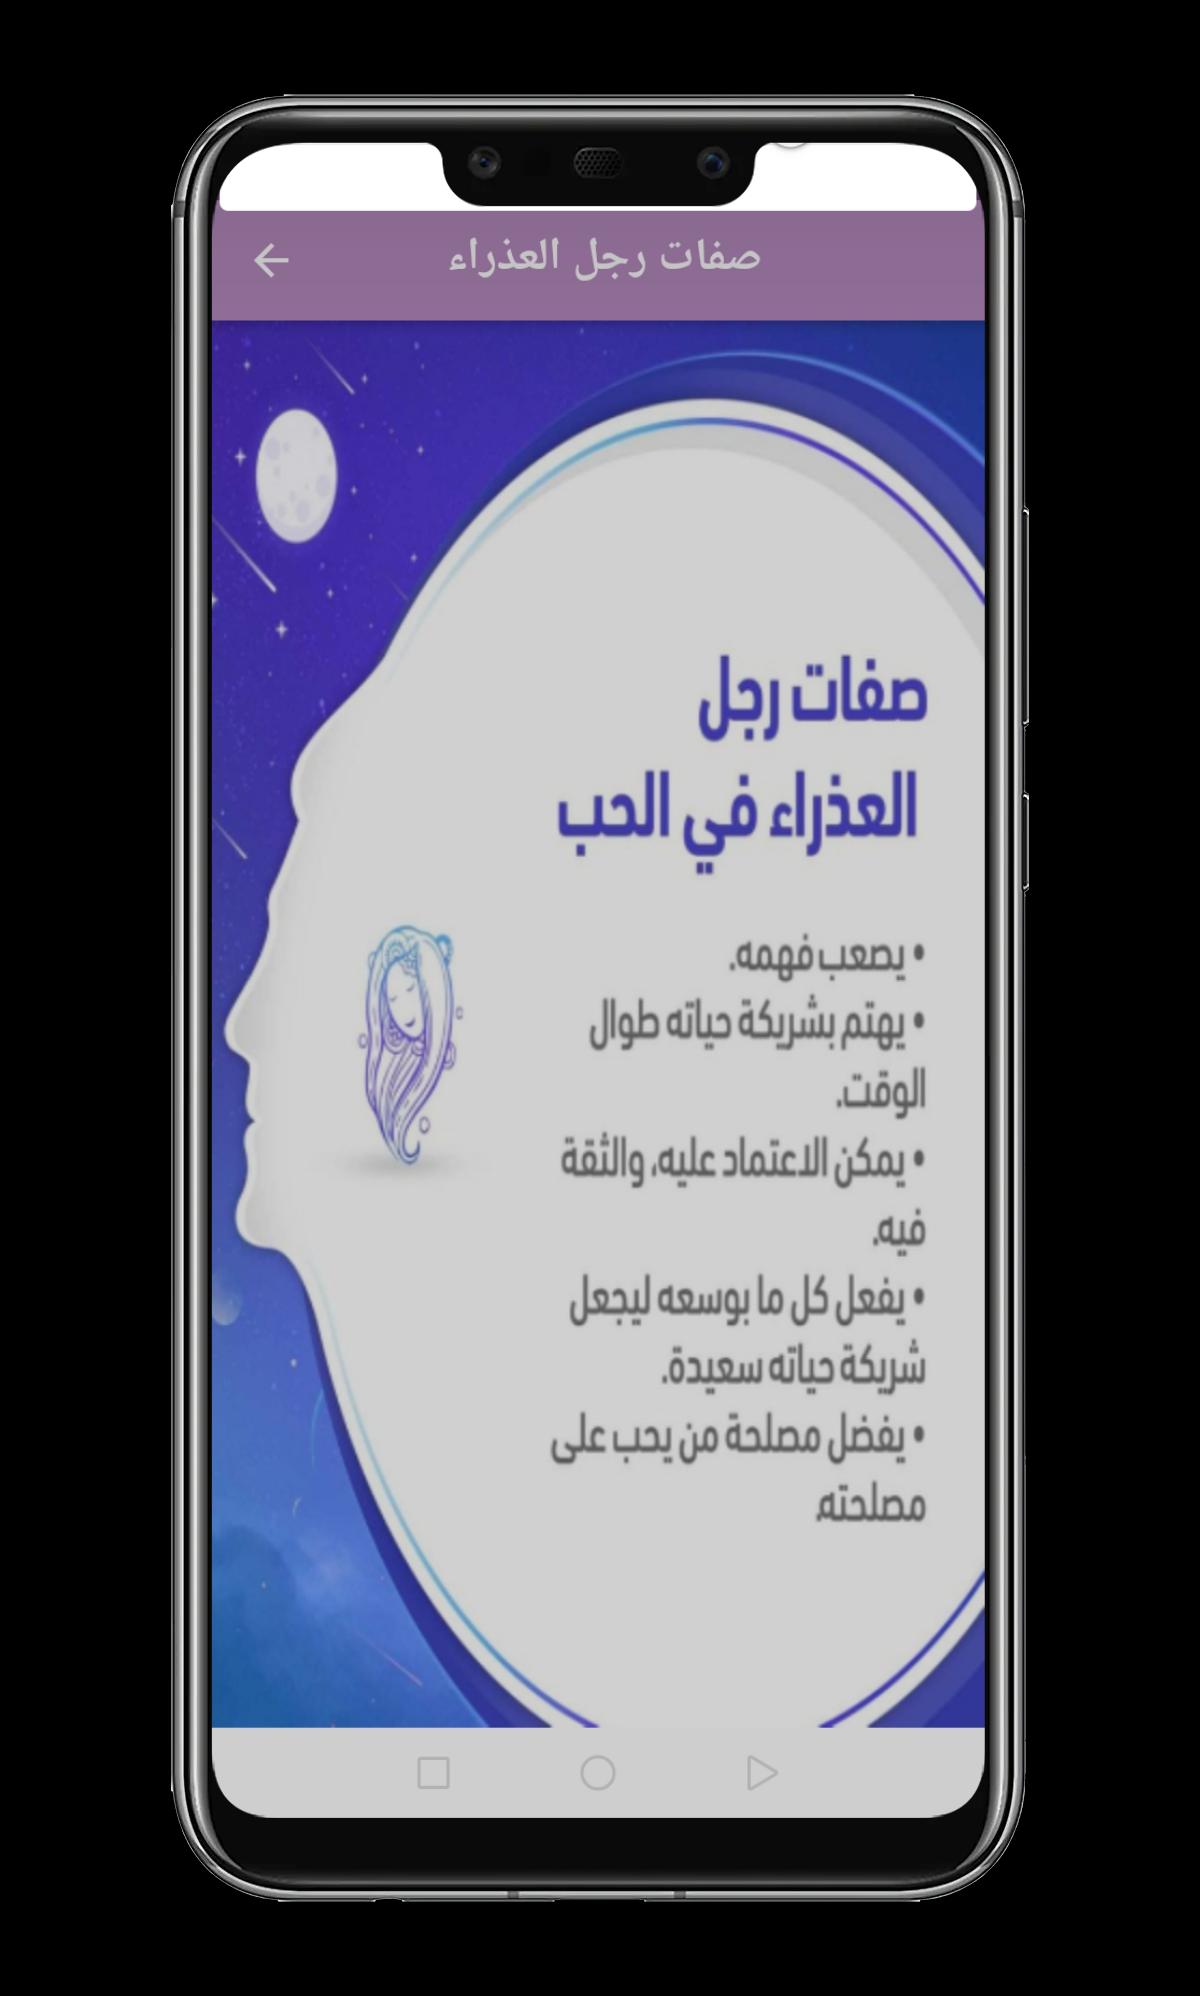 برج العذراء APK für Android herunterladen